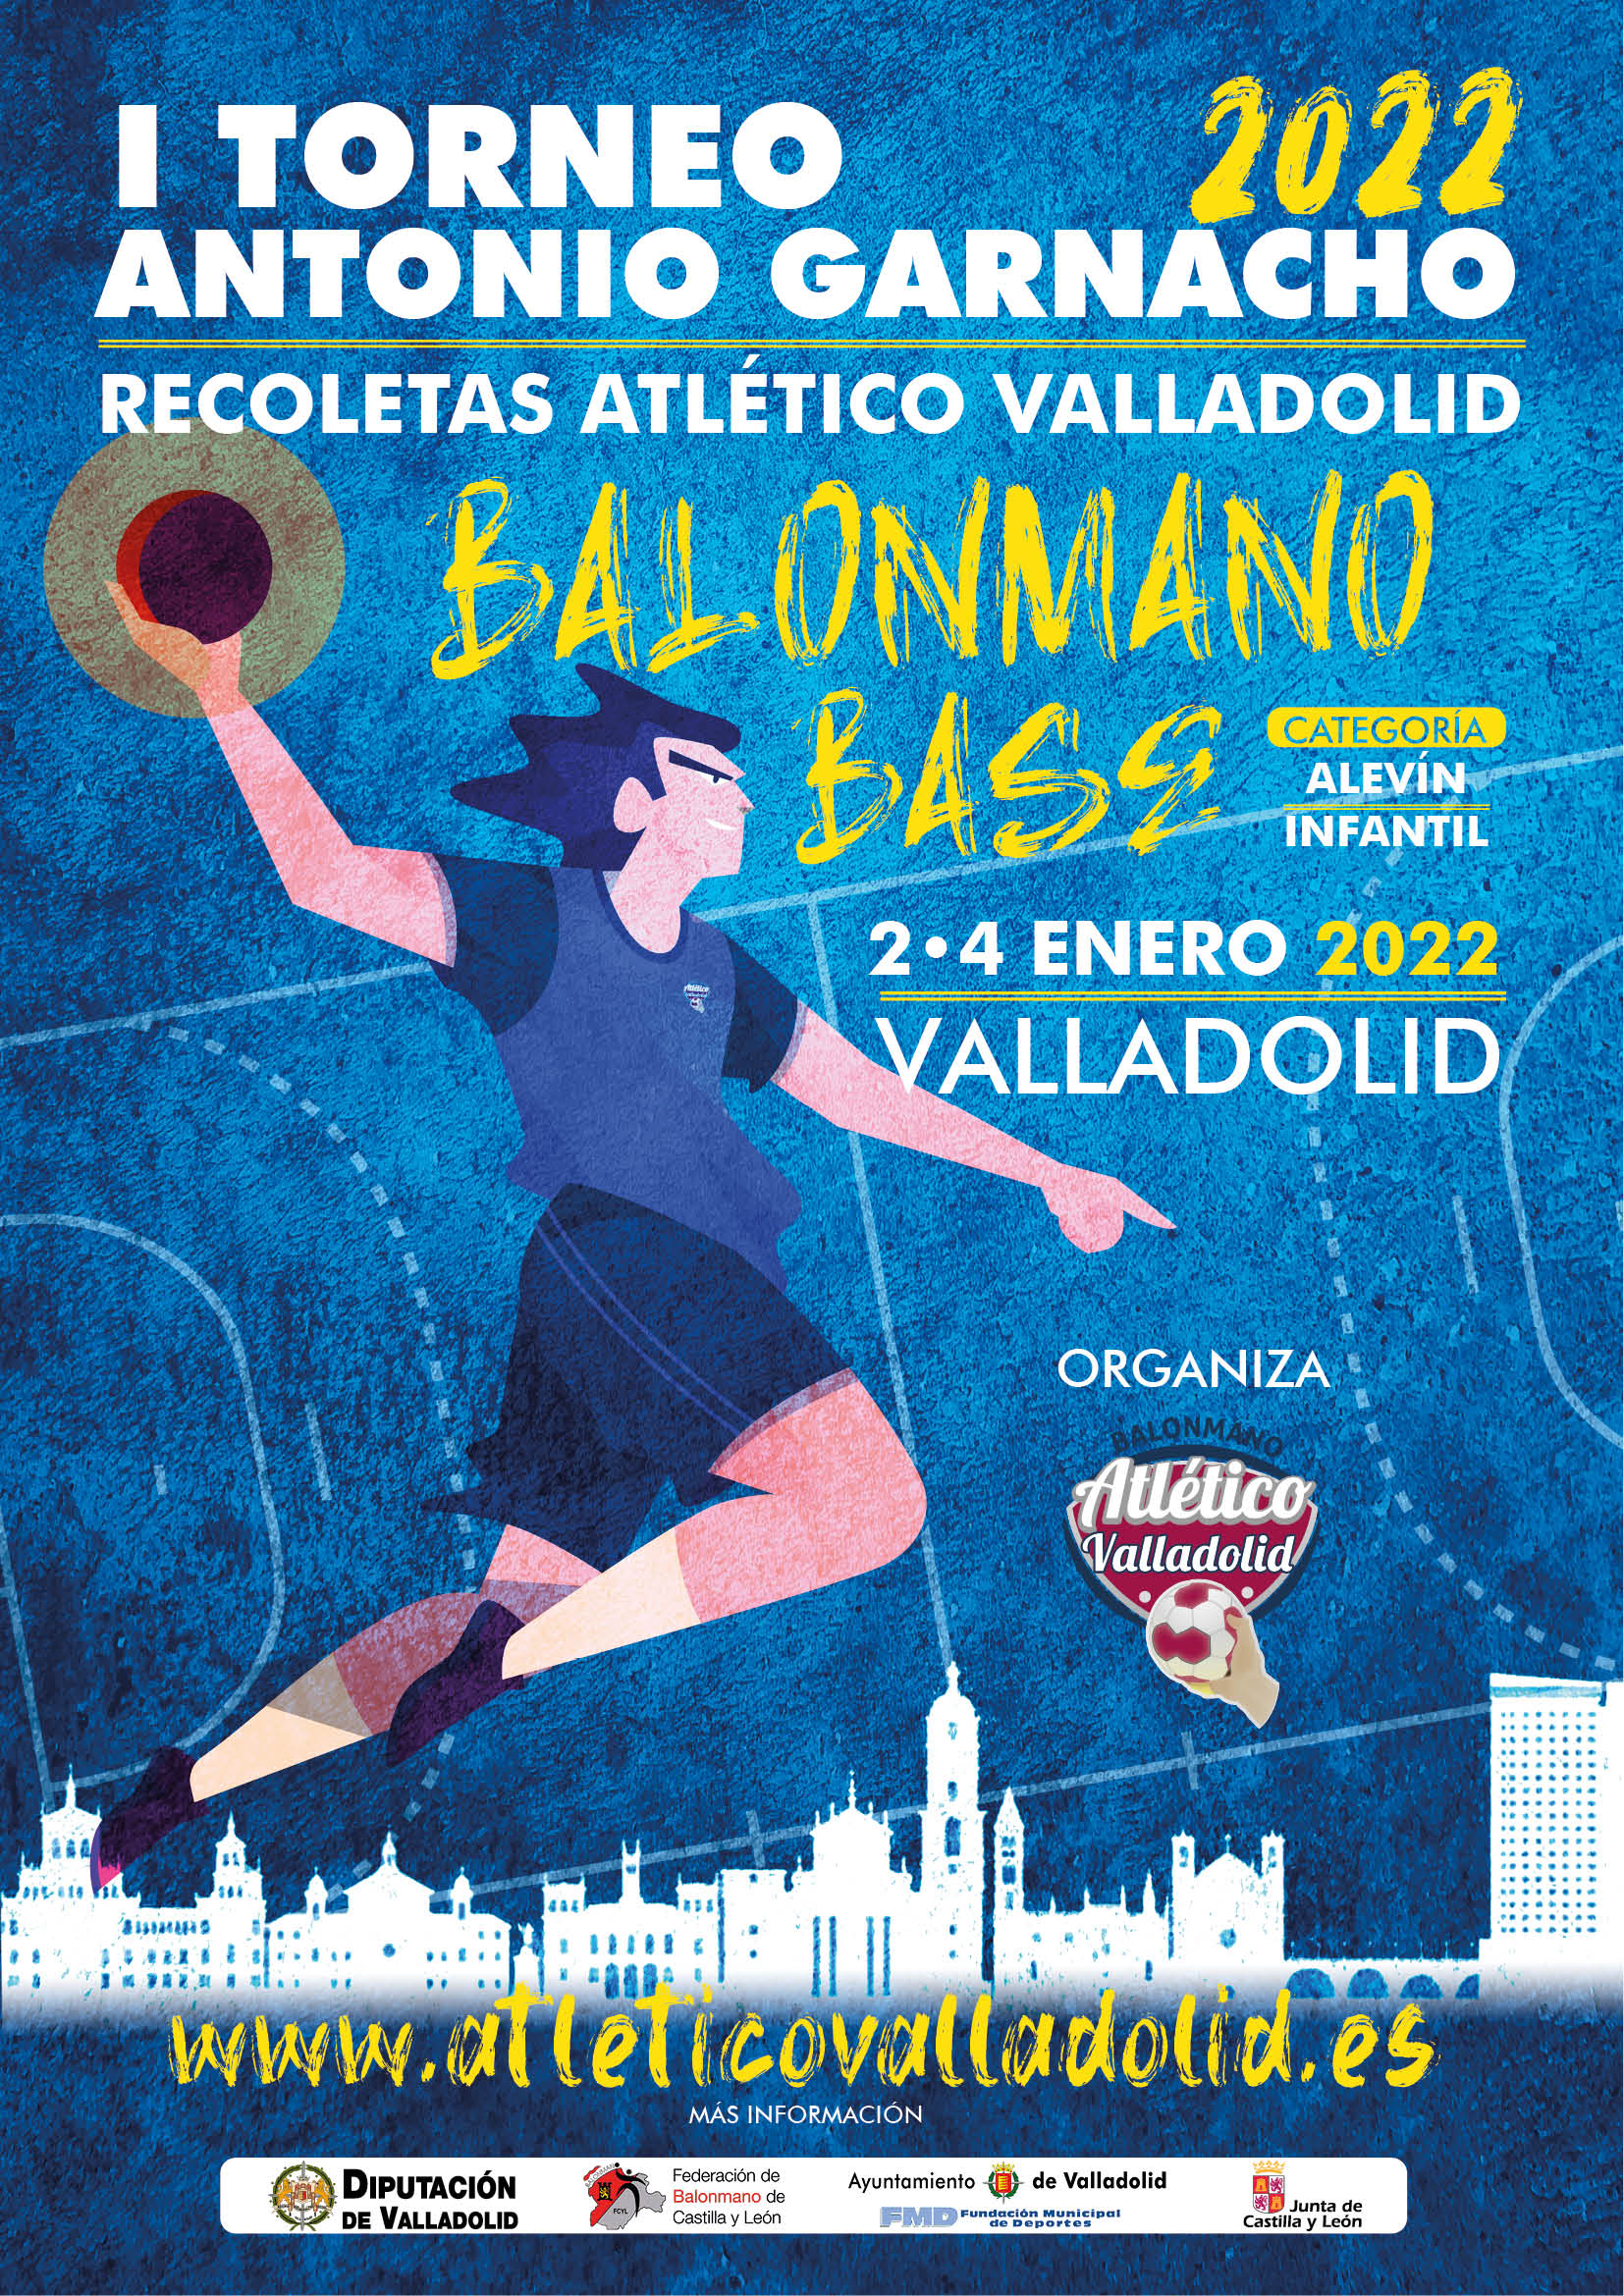 I Torneo Antonio Garnacho Recoletas Atlético Valladolid de balonmano base 2022 | Galería 1 / 1